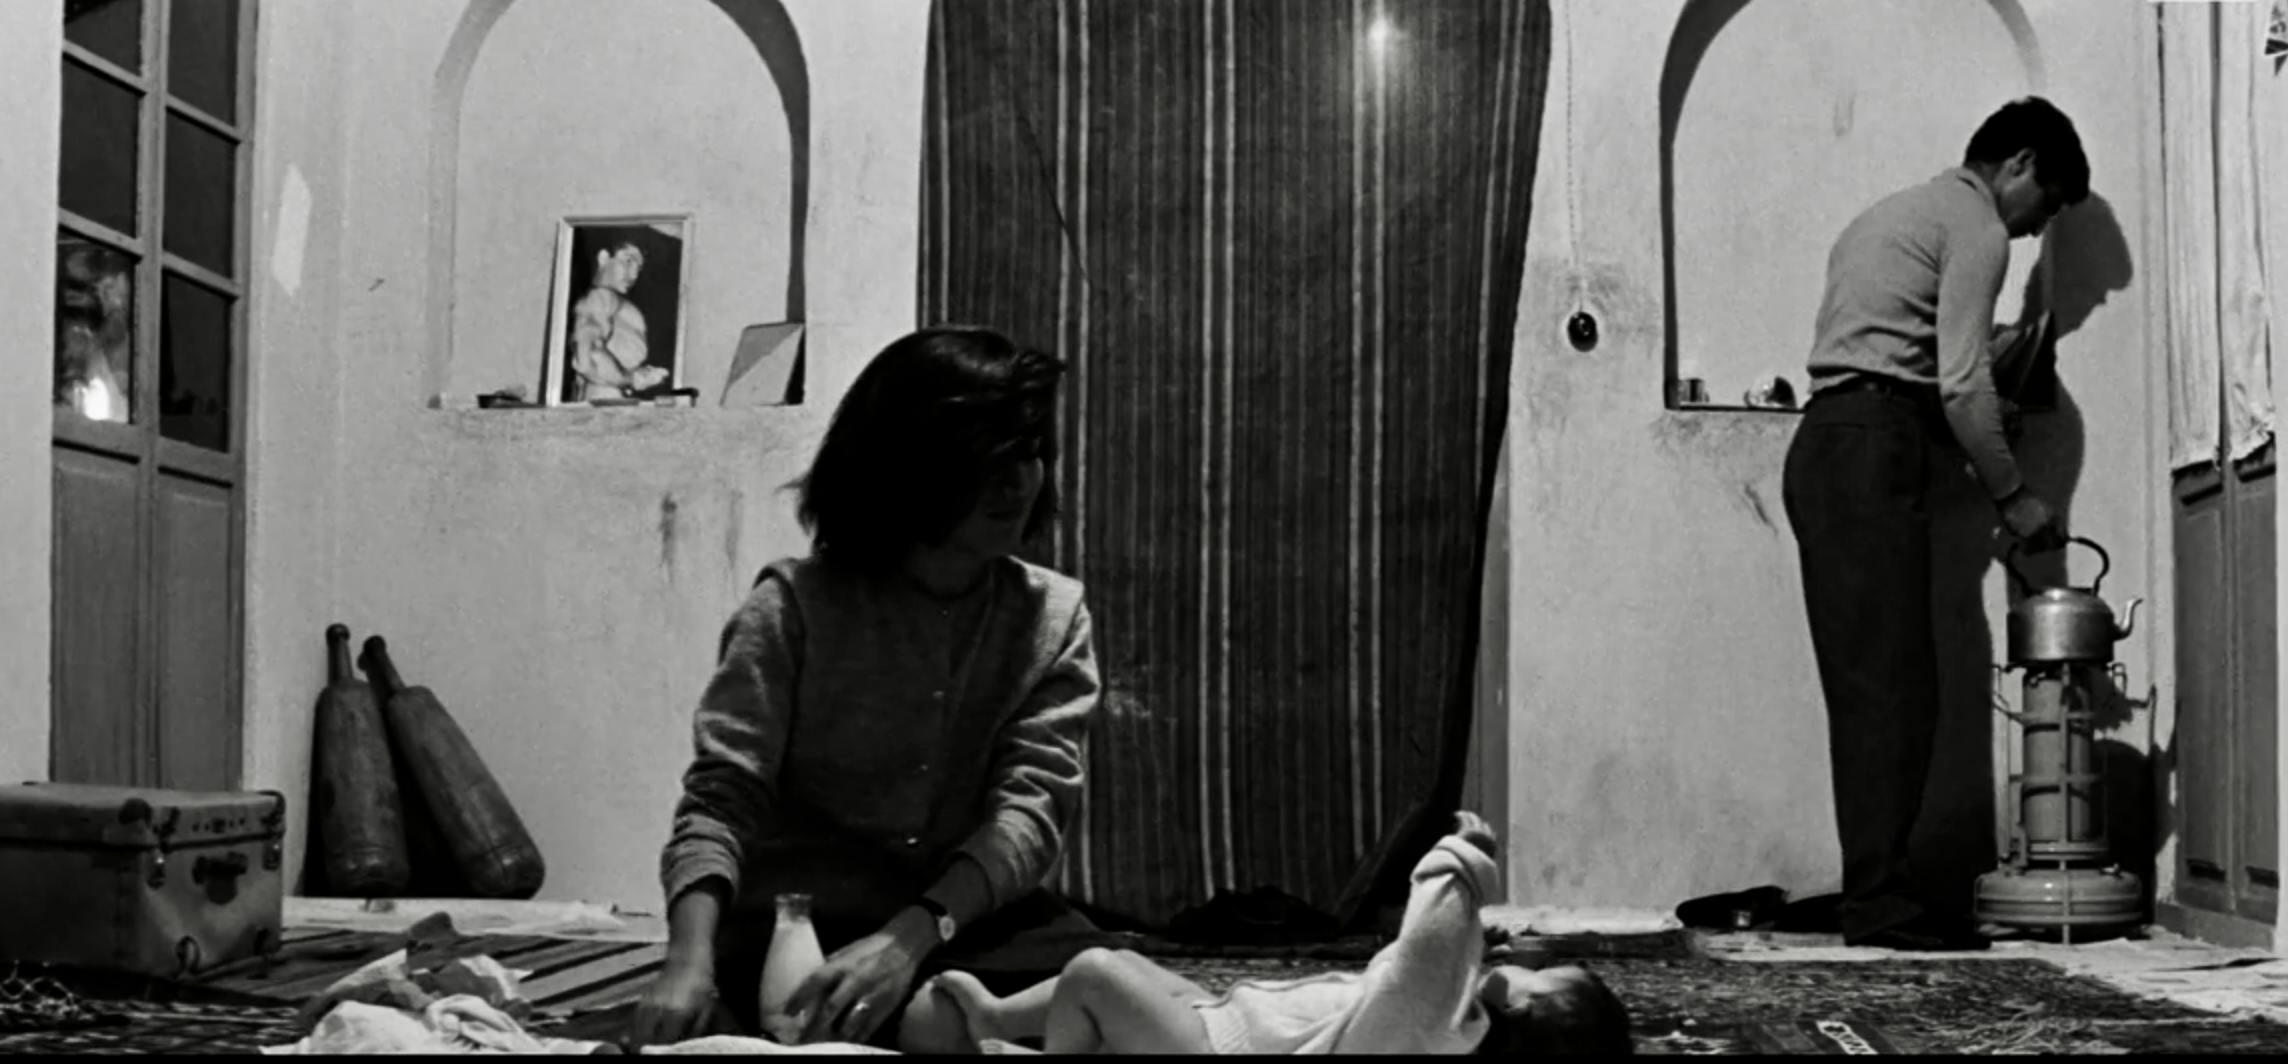 صحنه‌ای از نسخه بازسازی‌شده فیلم خشت و آیینه، ساخته ابراهیم گلستان - در این صحنه مرد، زن و کودک در یک قاب دیده می‌شوند.